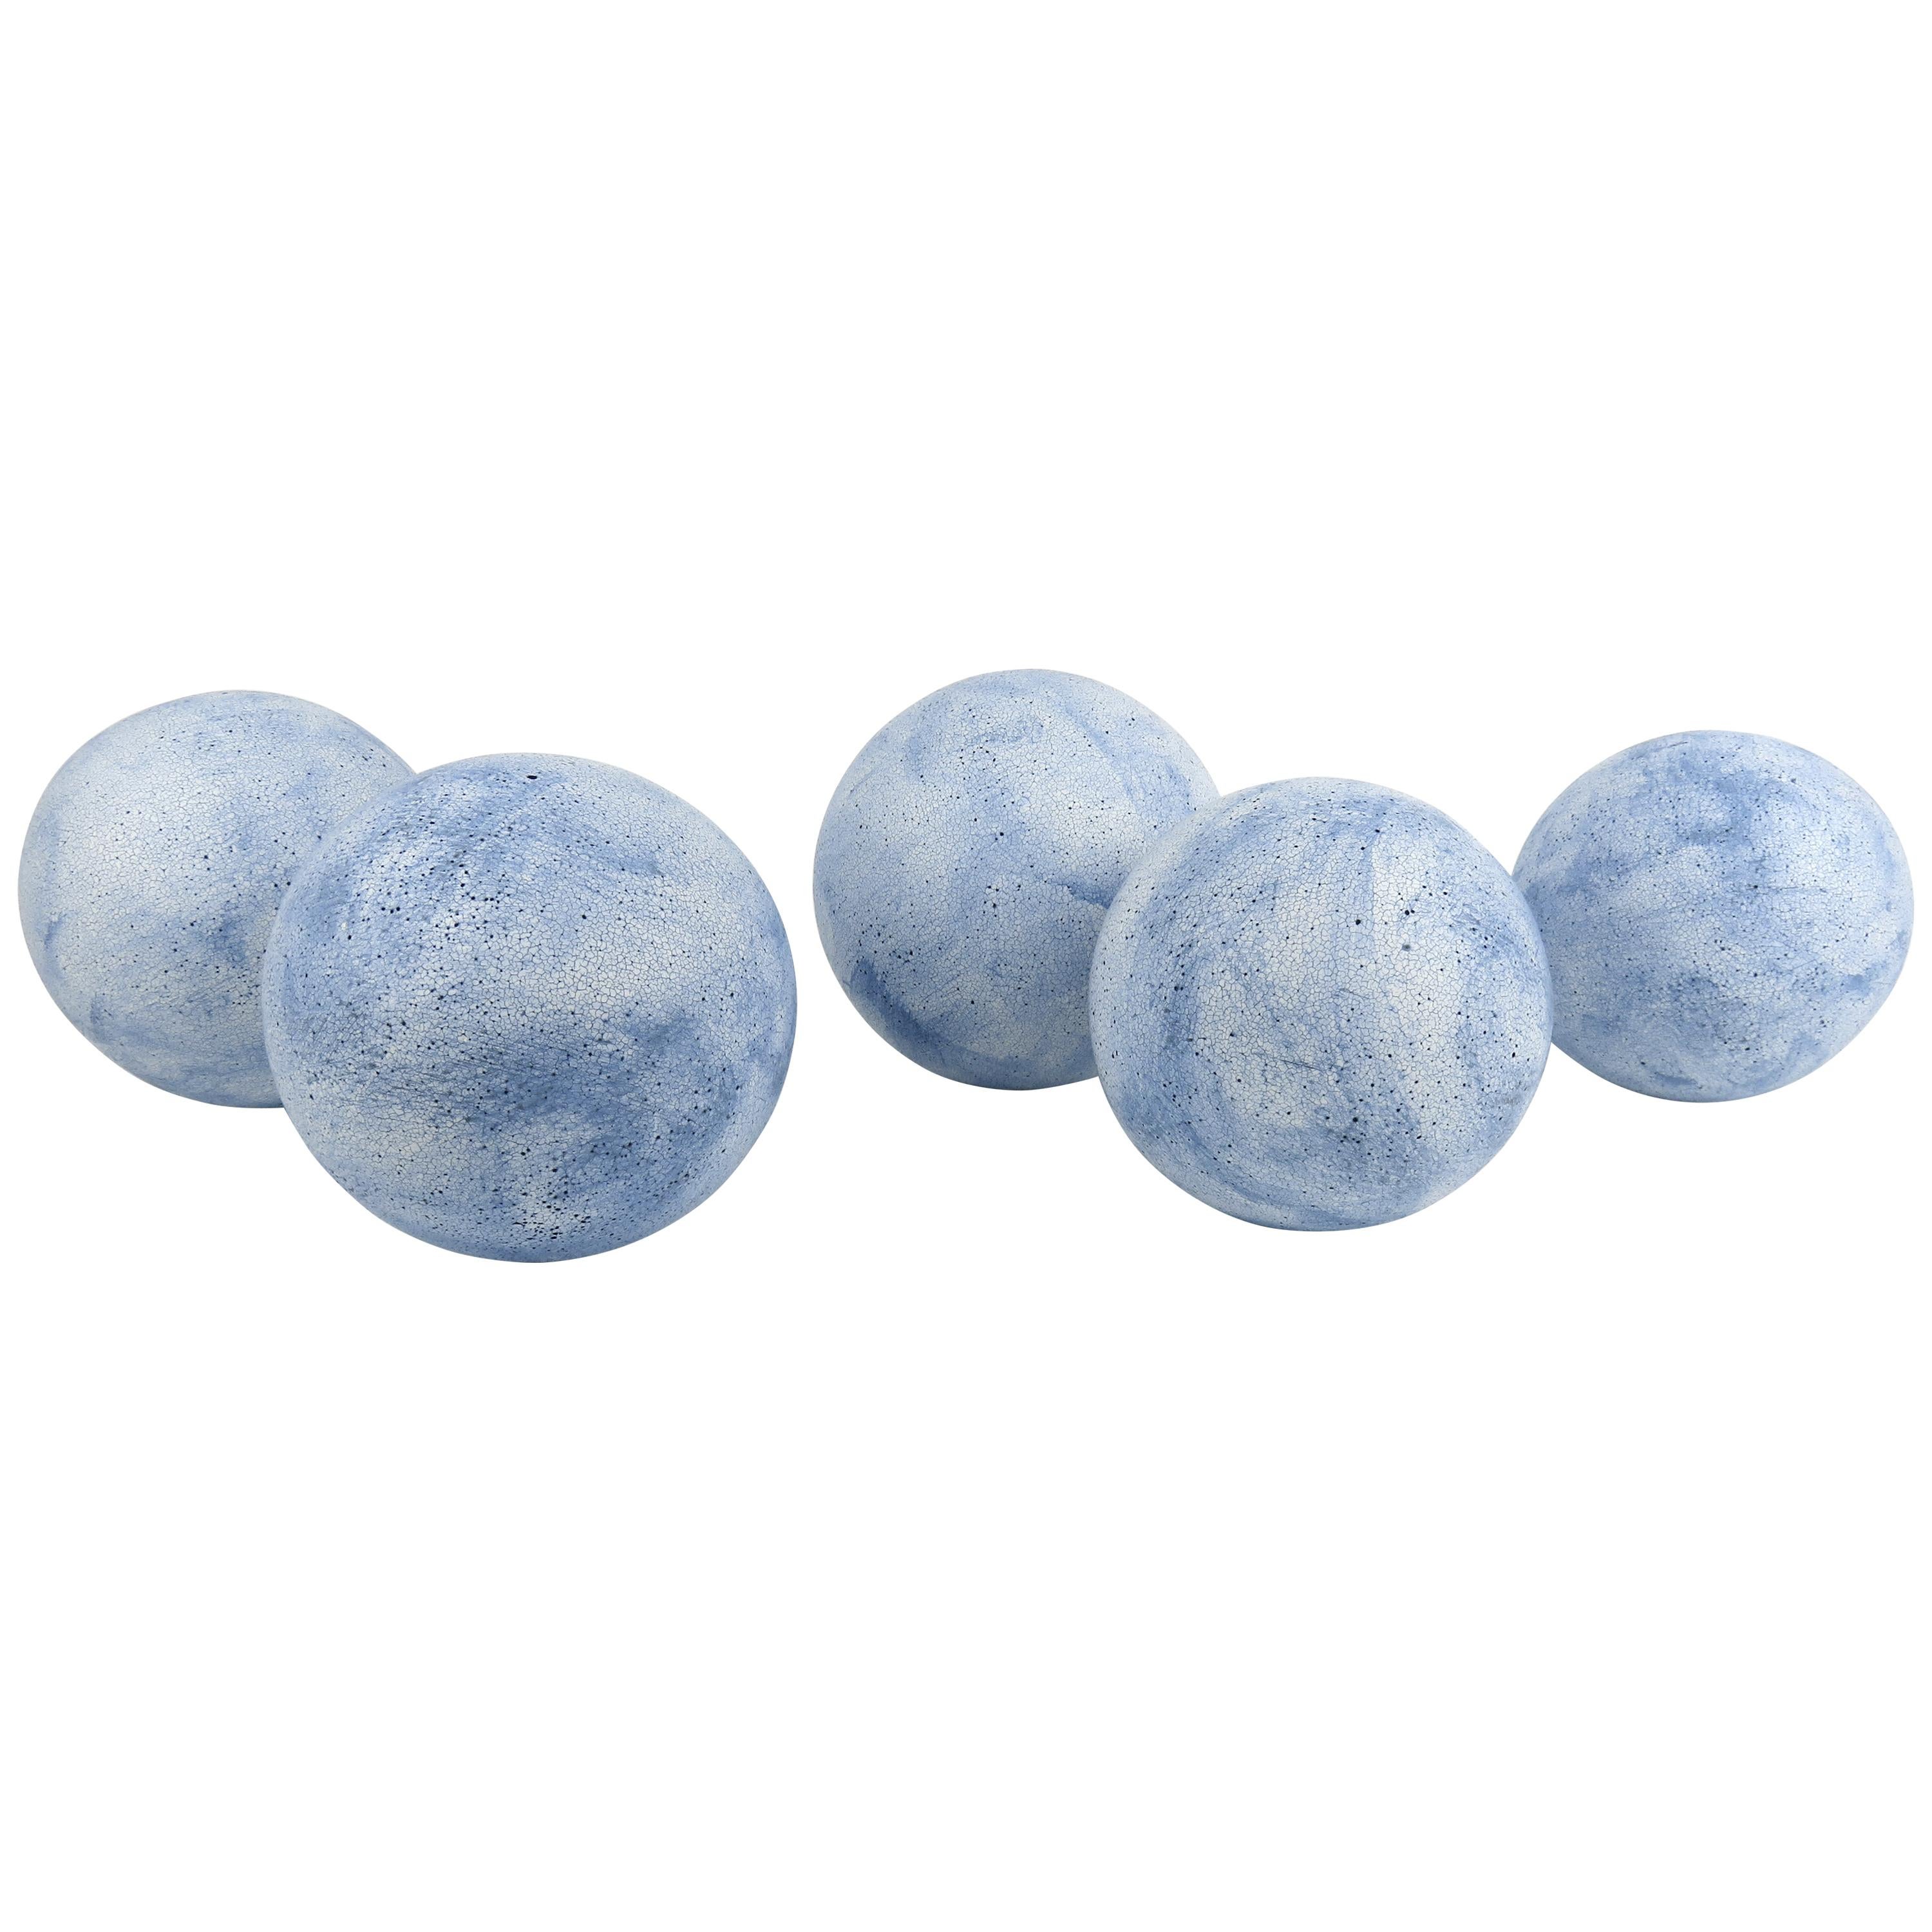 Sphères en céramique bleu ciel fabriquées à la main, terra Sigilatta et oxyde cobalt